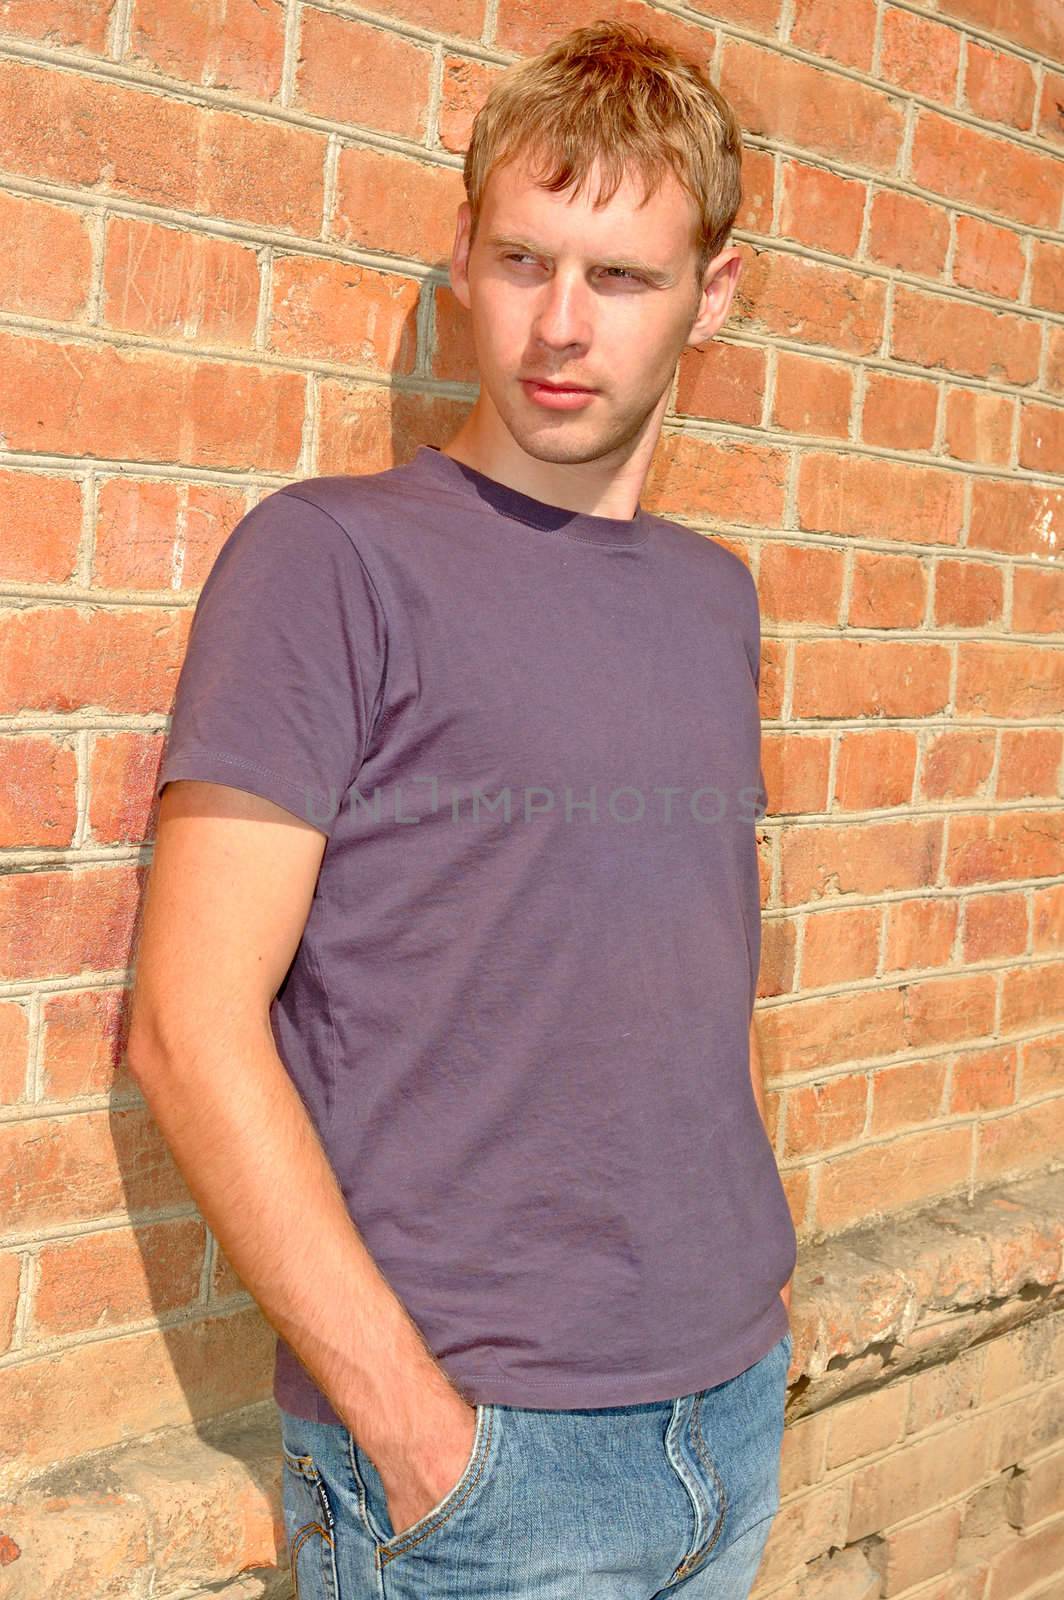 Young stylish man stand near brick wall. by alexpurs